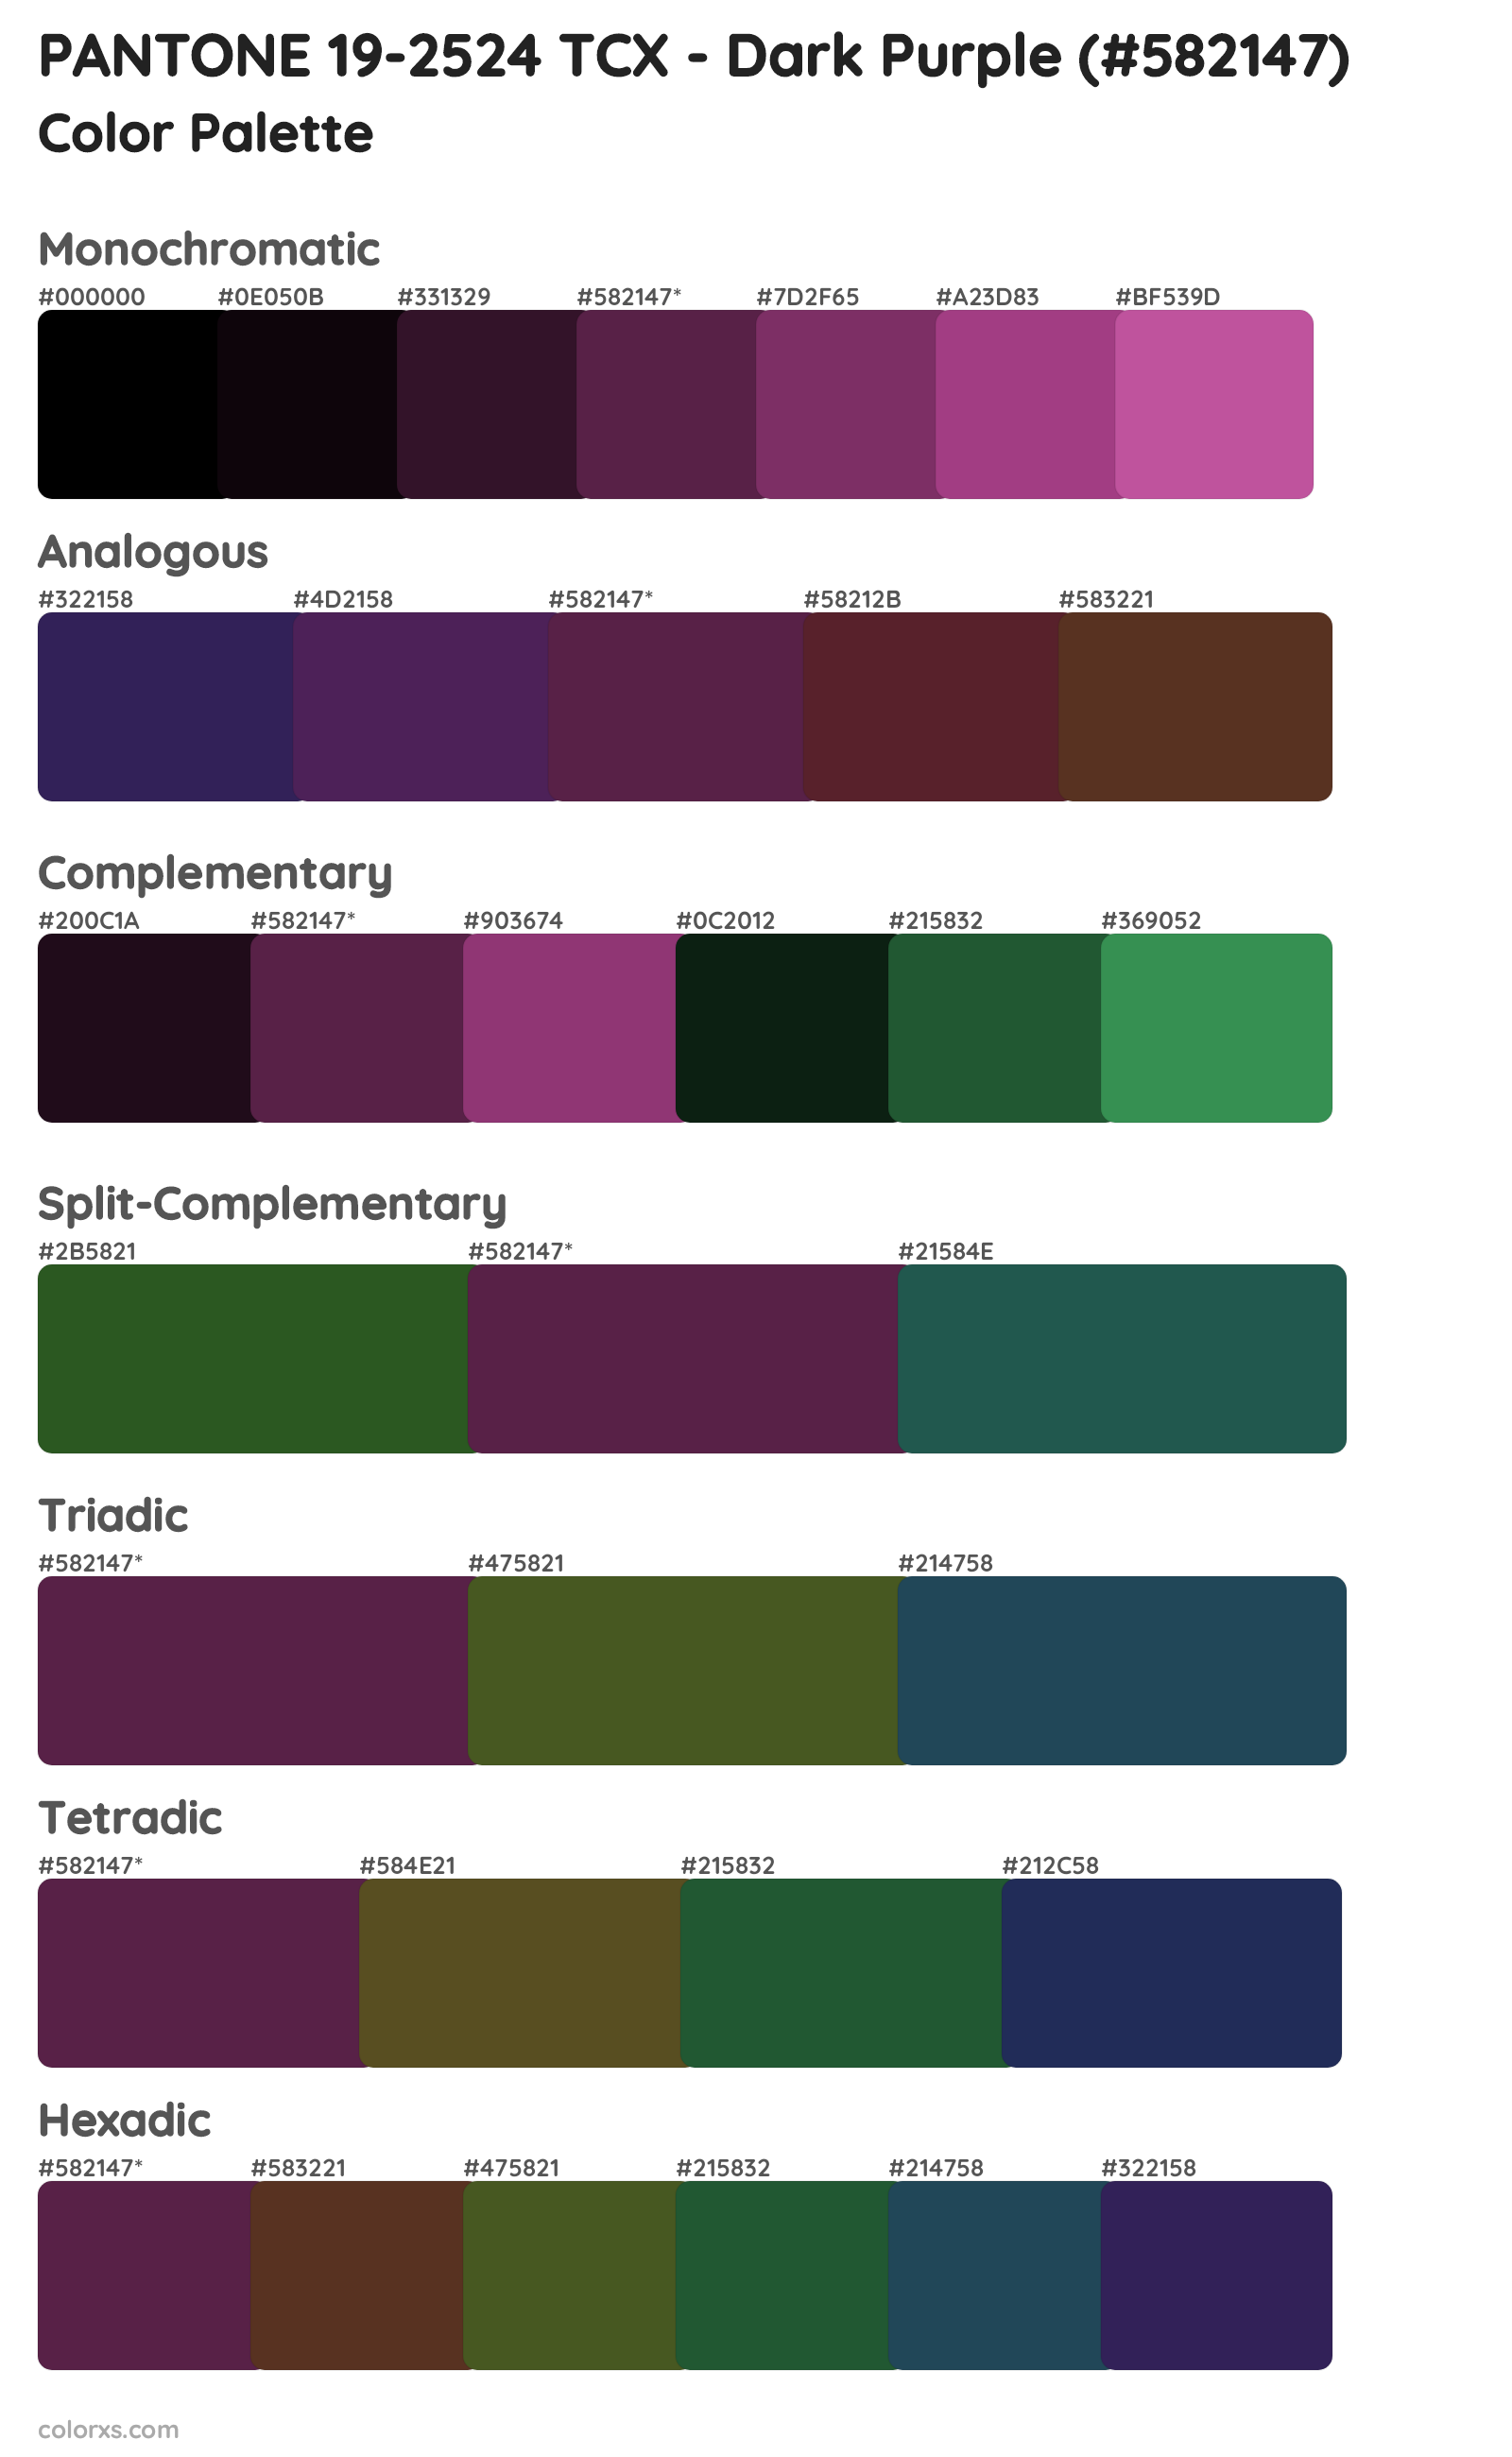 PANTONE 19-2524 TCX - Dark Purple Color Scheme Palettes